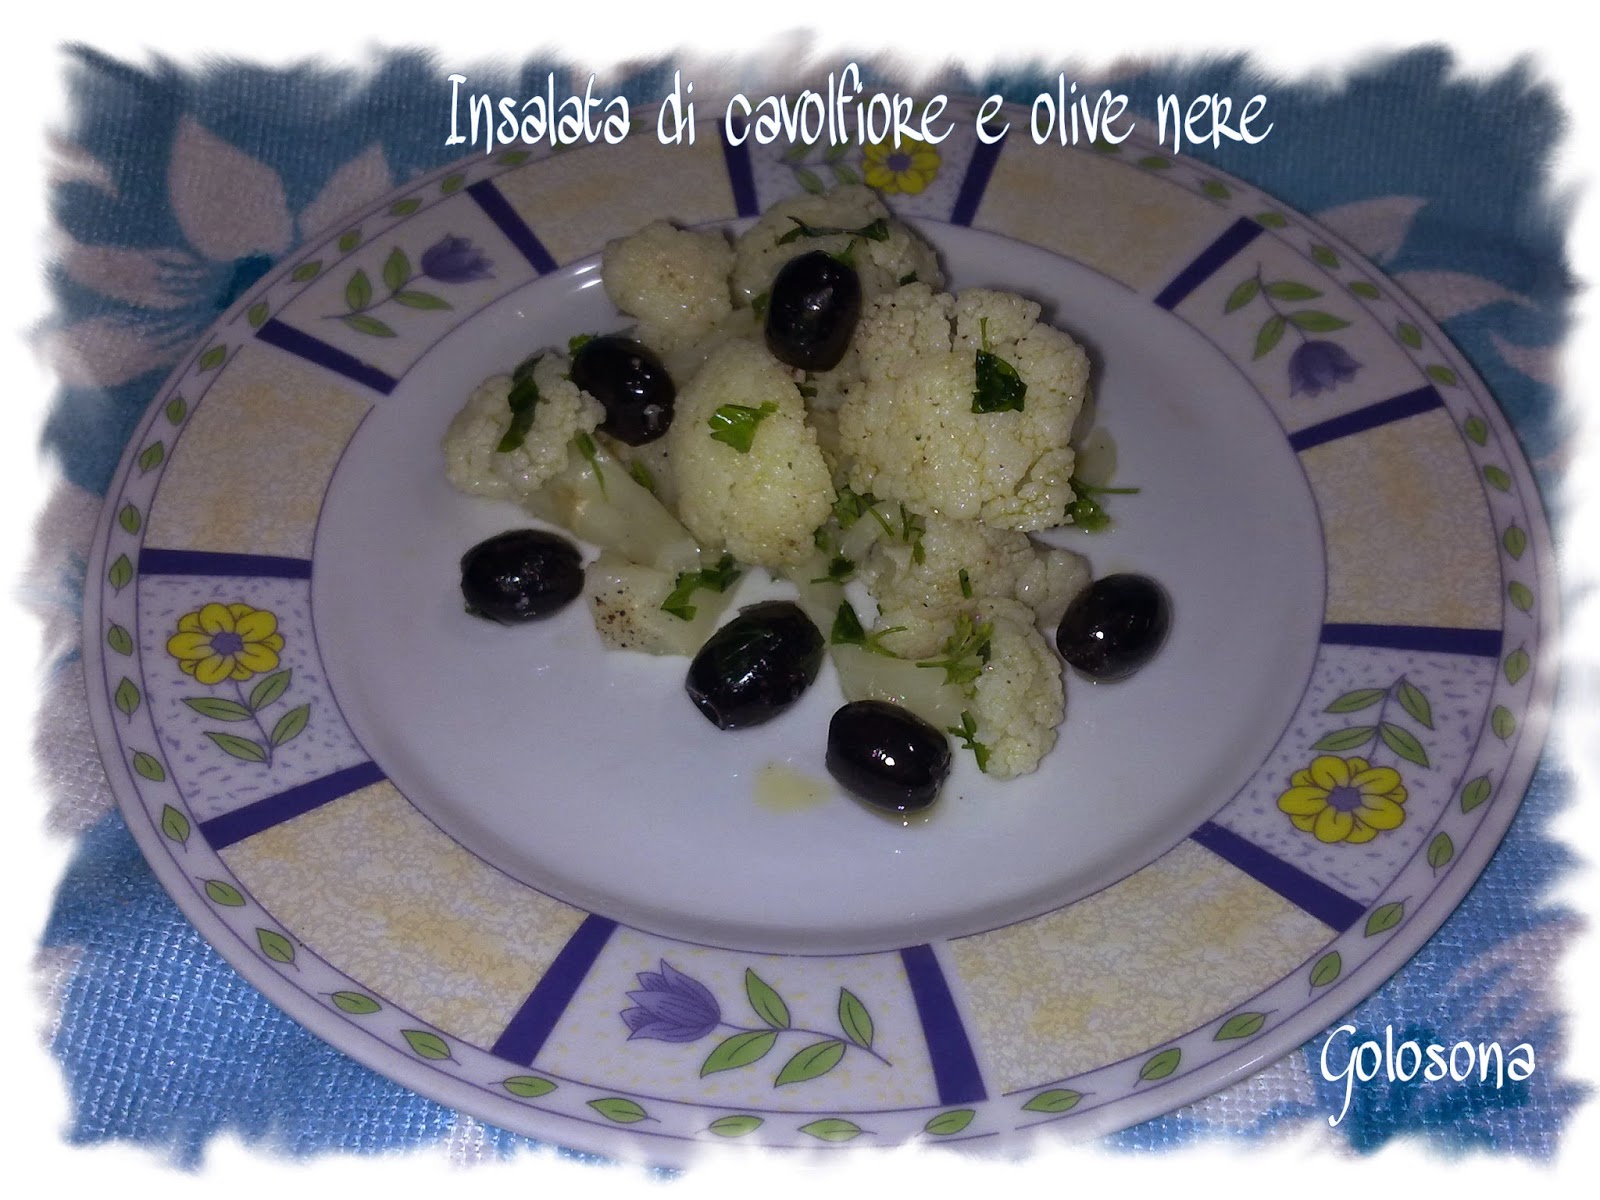   insalata di cavolfiore e olive nere 